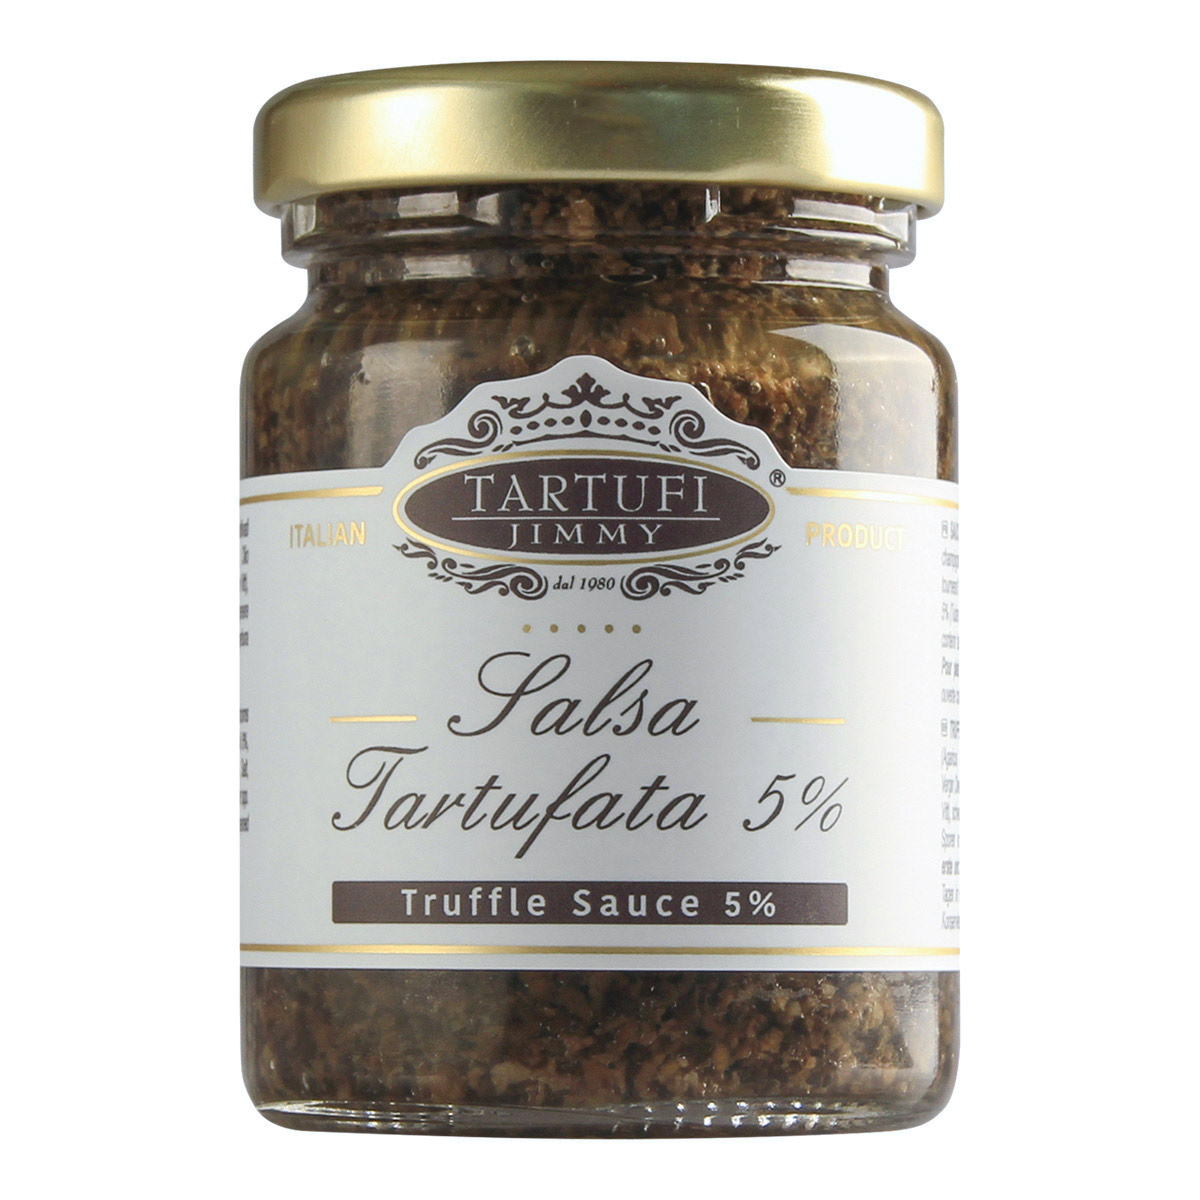 Salsa Tartufata (truffle sauce), with 10% summer truffle